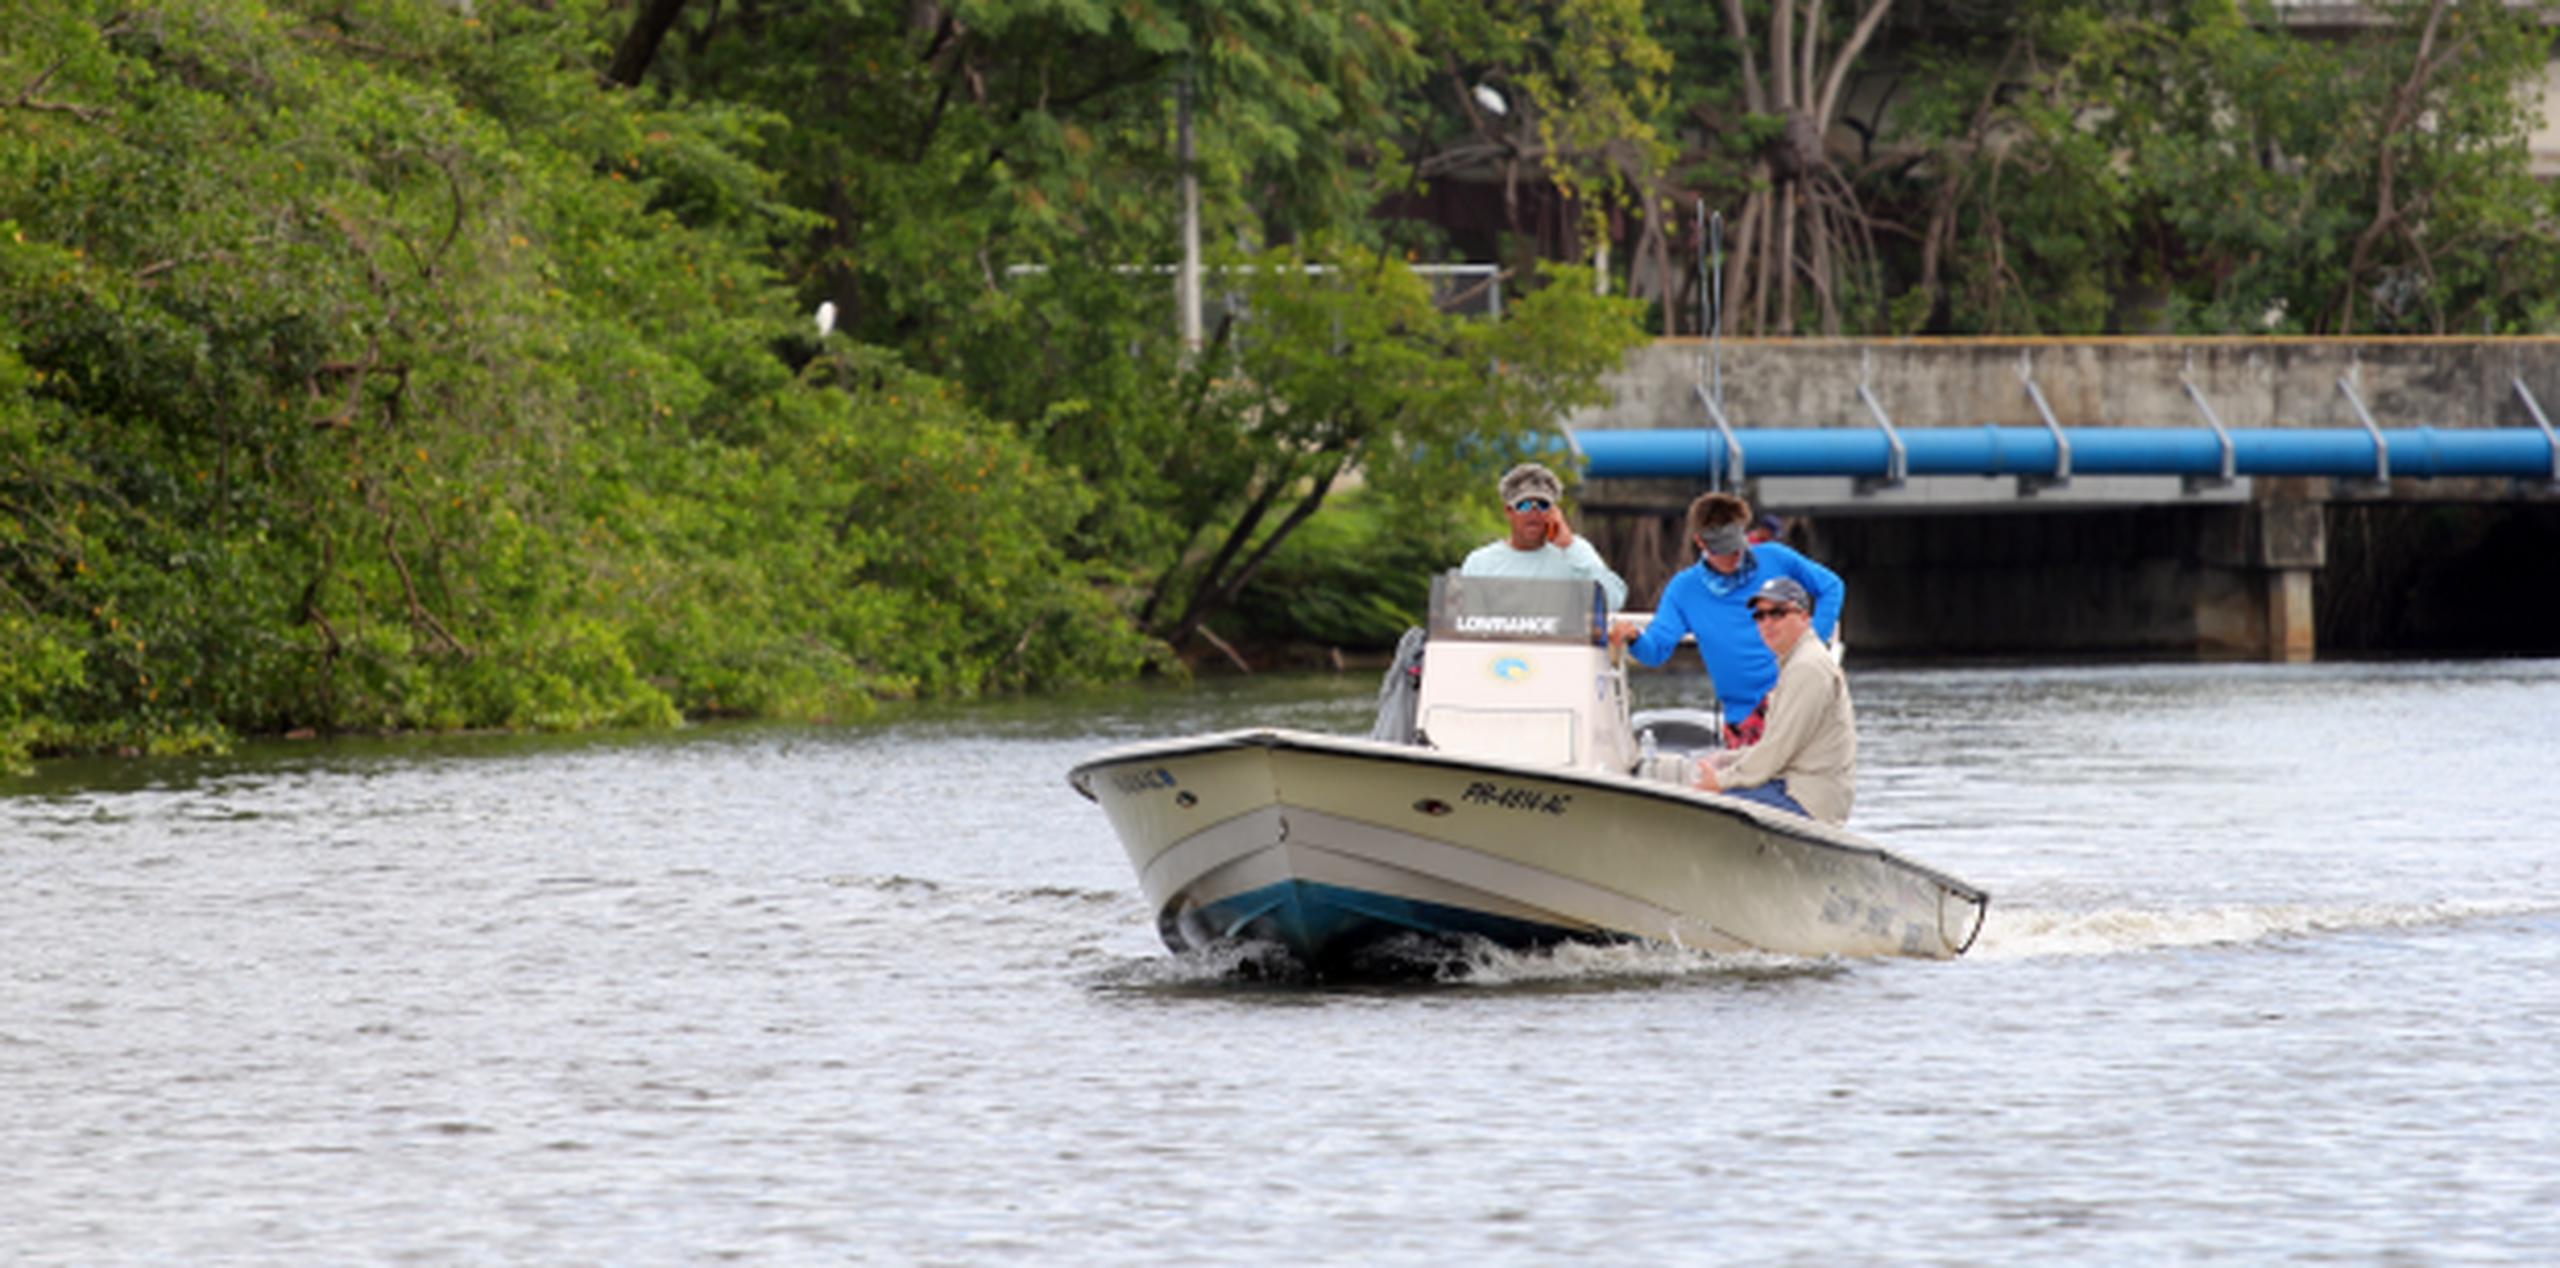 La iniciativa entre el DRNA y la fundación Legado Azul busca  mejorar le experiencia de la pesca recreativa y abaratar costos. (Archivo)